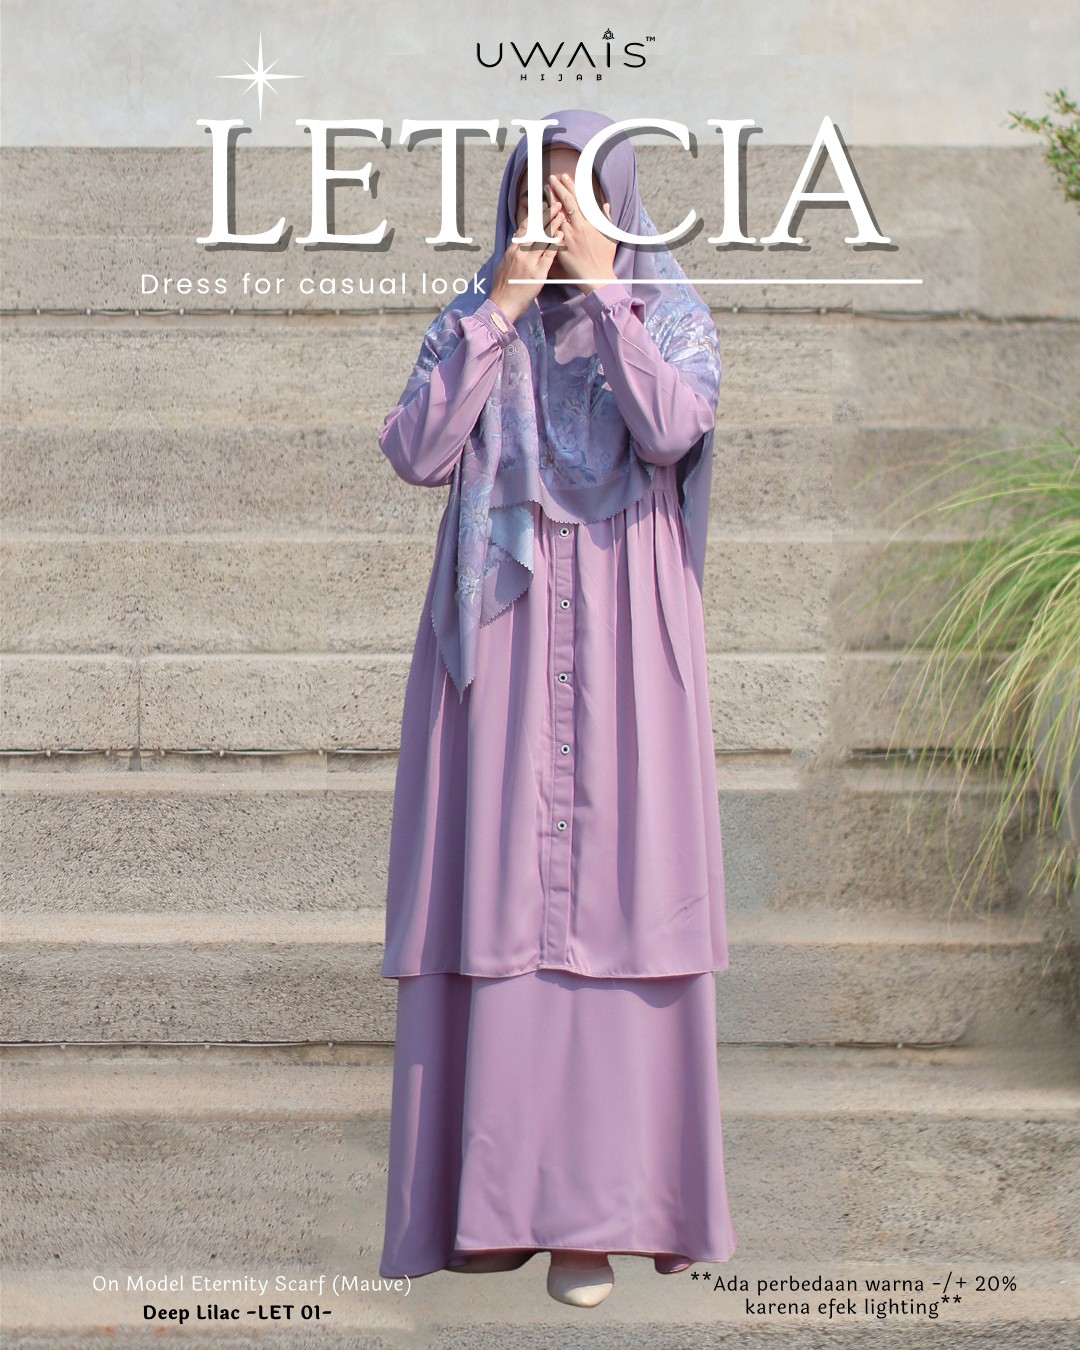 Katalog Leticia & Leanor (1)_1